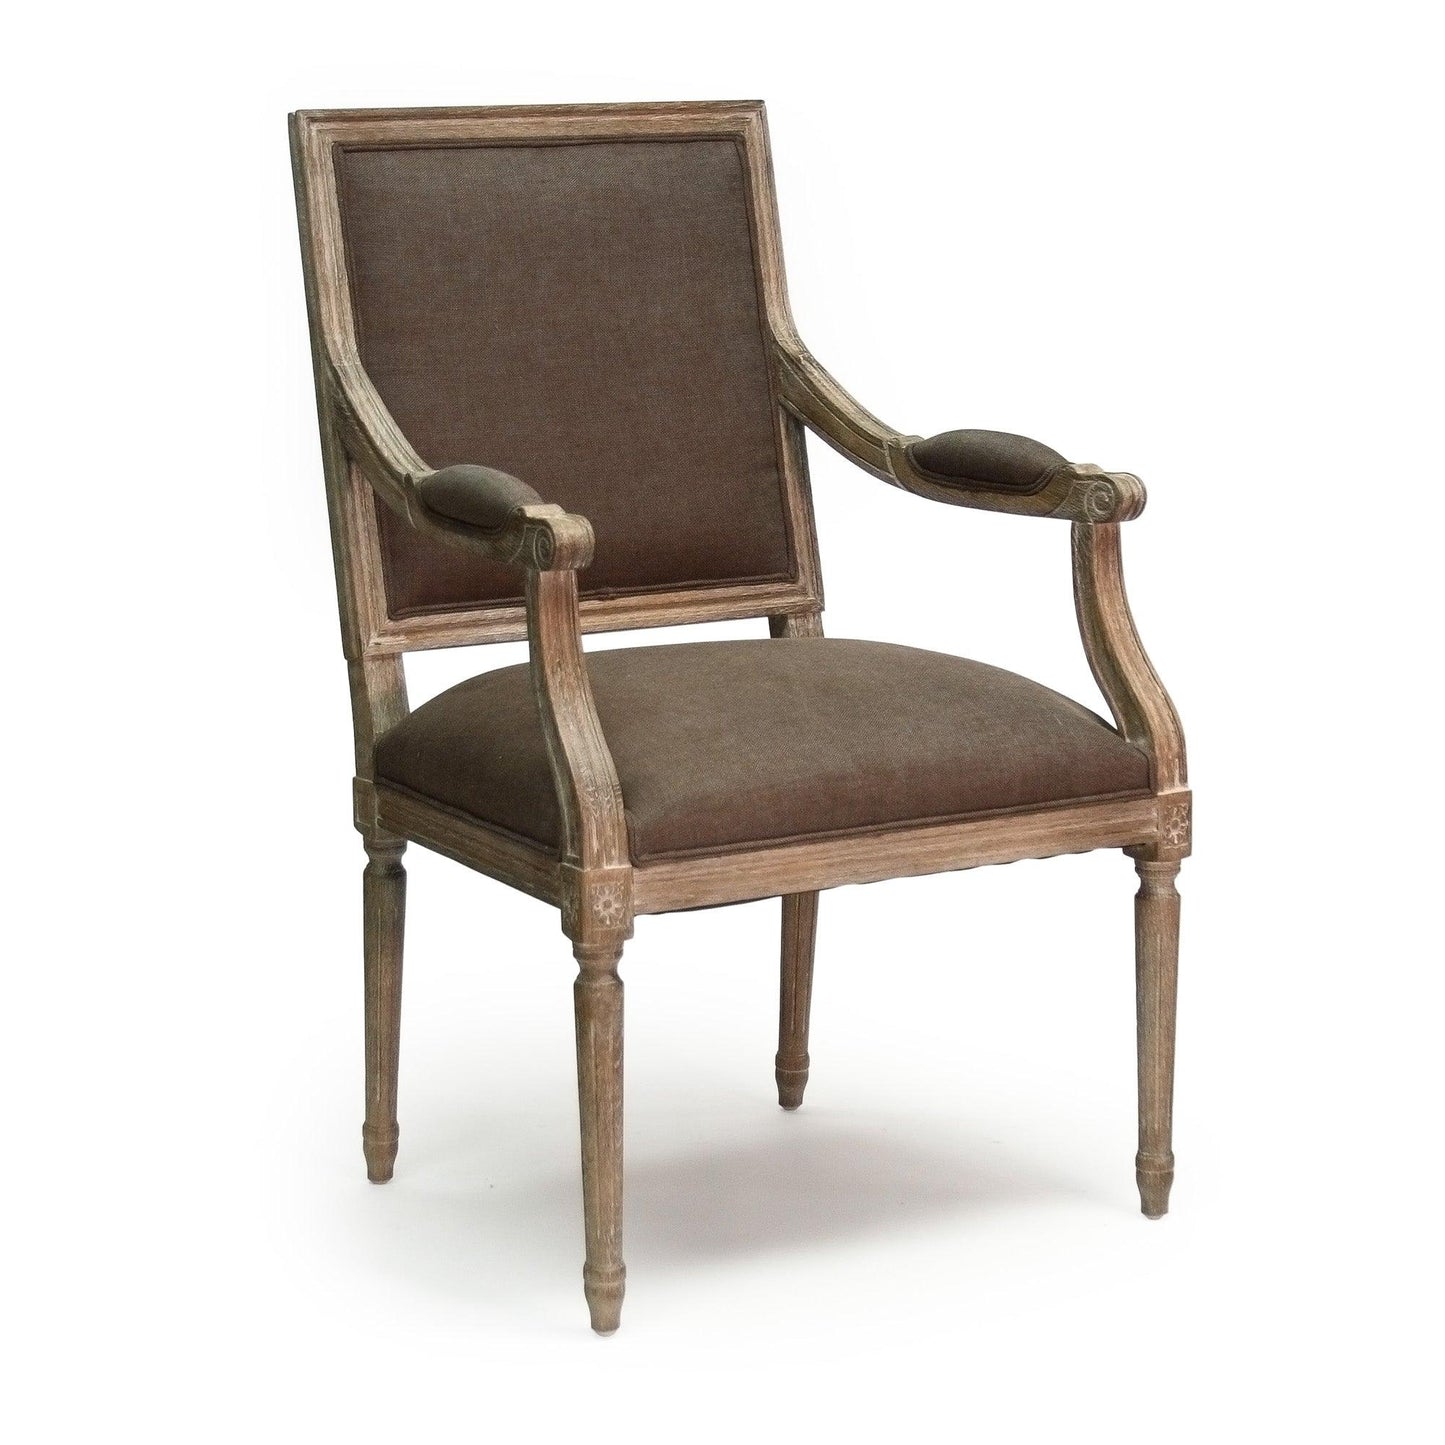 Louis Arm Chair B008 E272 A008 FredCo